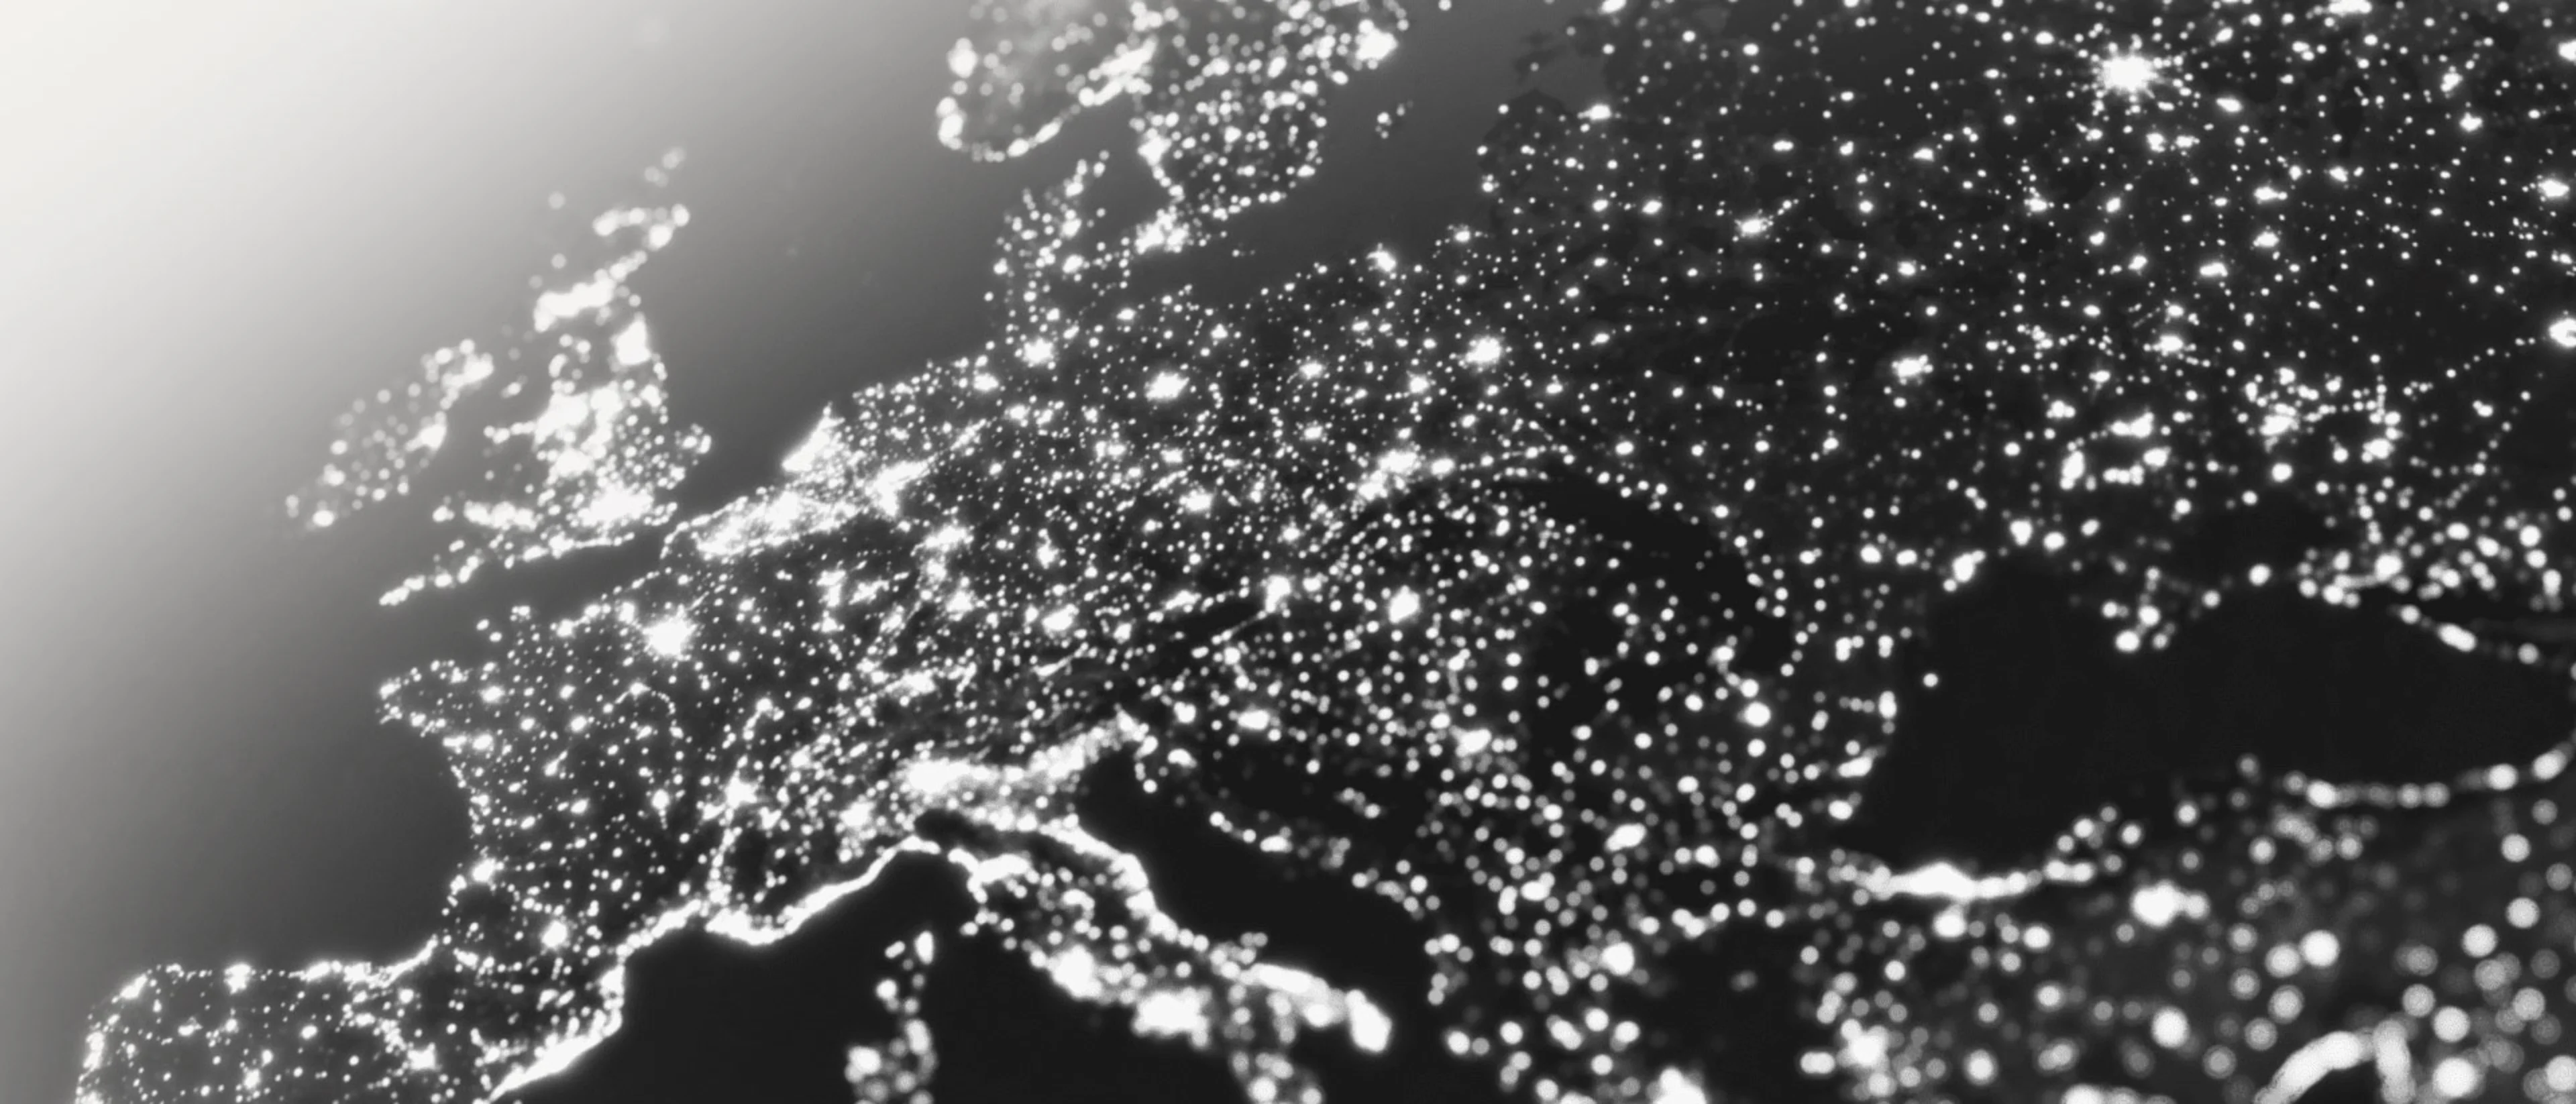 Europa von oben in der Nacht